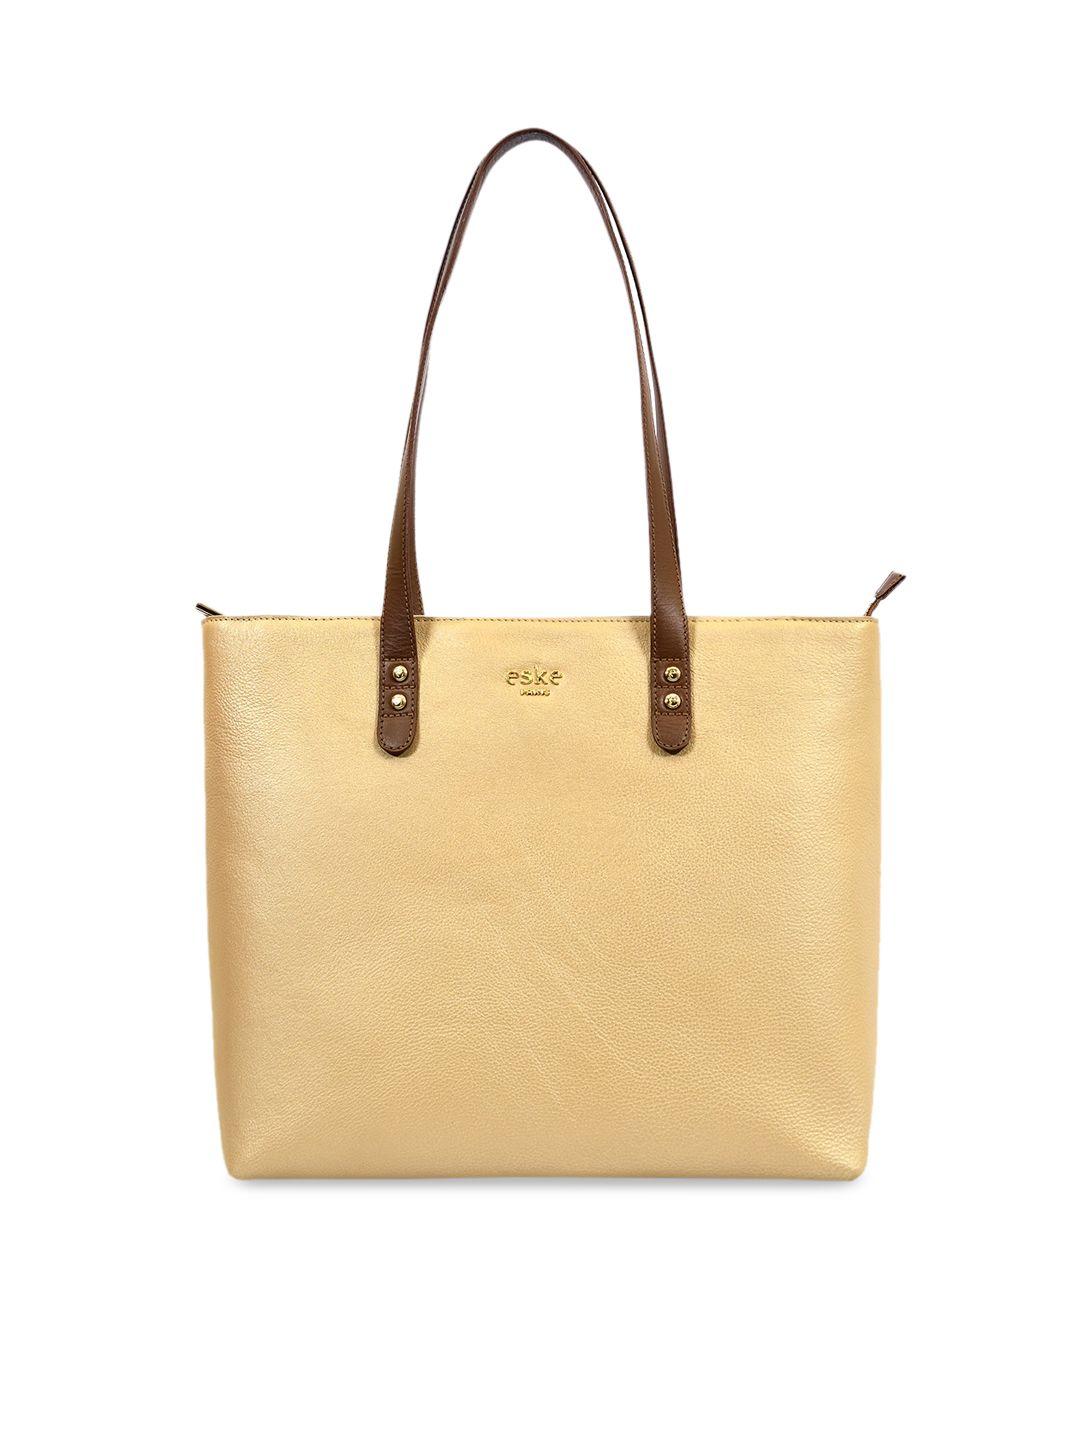 eske gold-toned solid shoulder leather bag